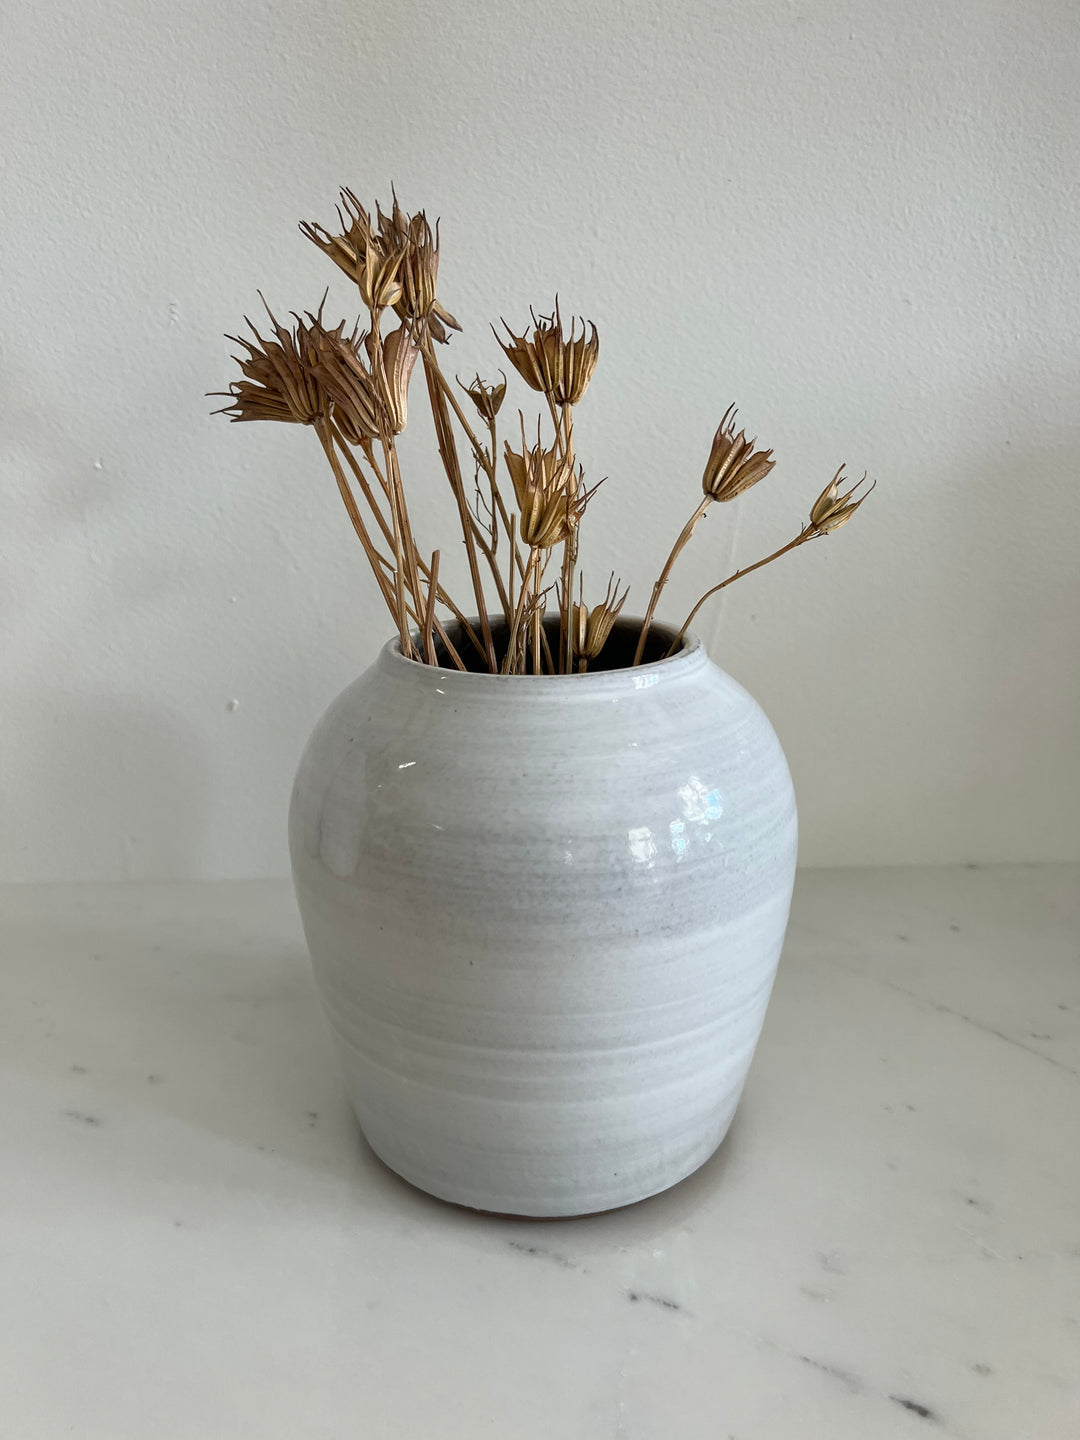 Ceramic Glazed White Decor Vase by Krystal Osman Designs